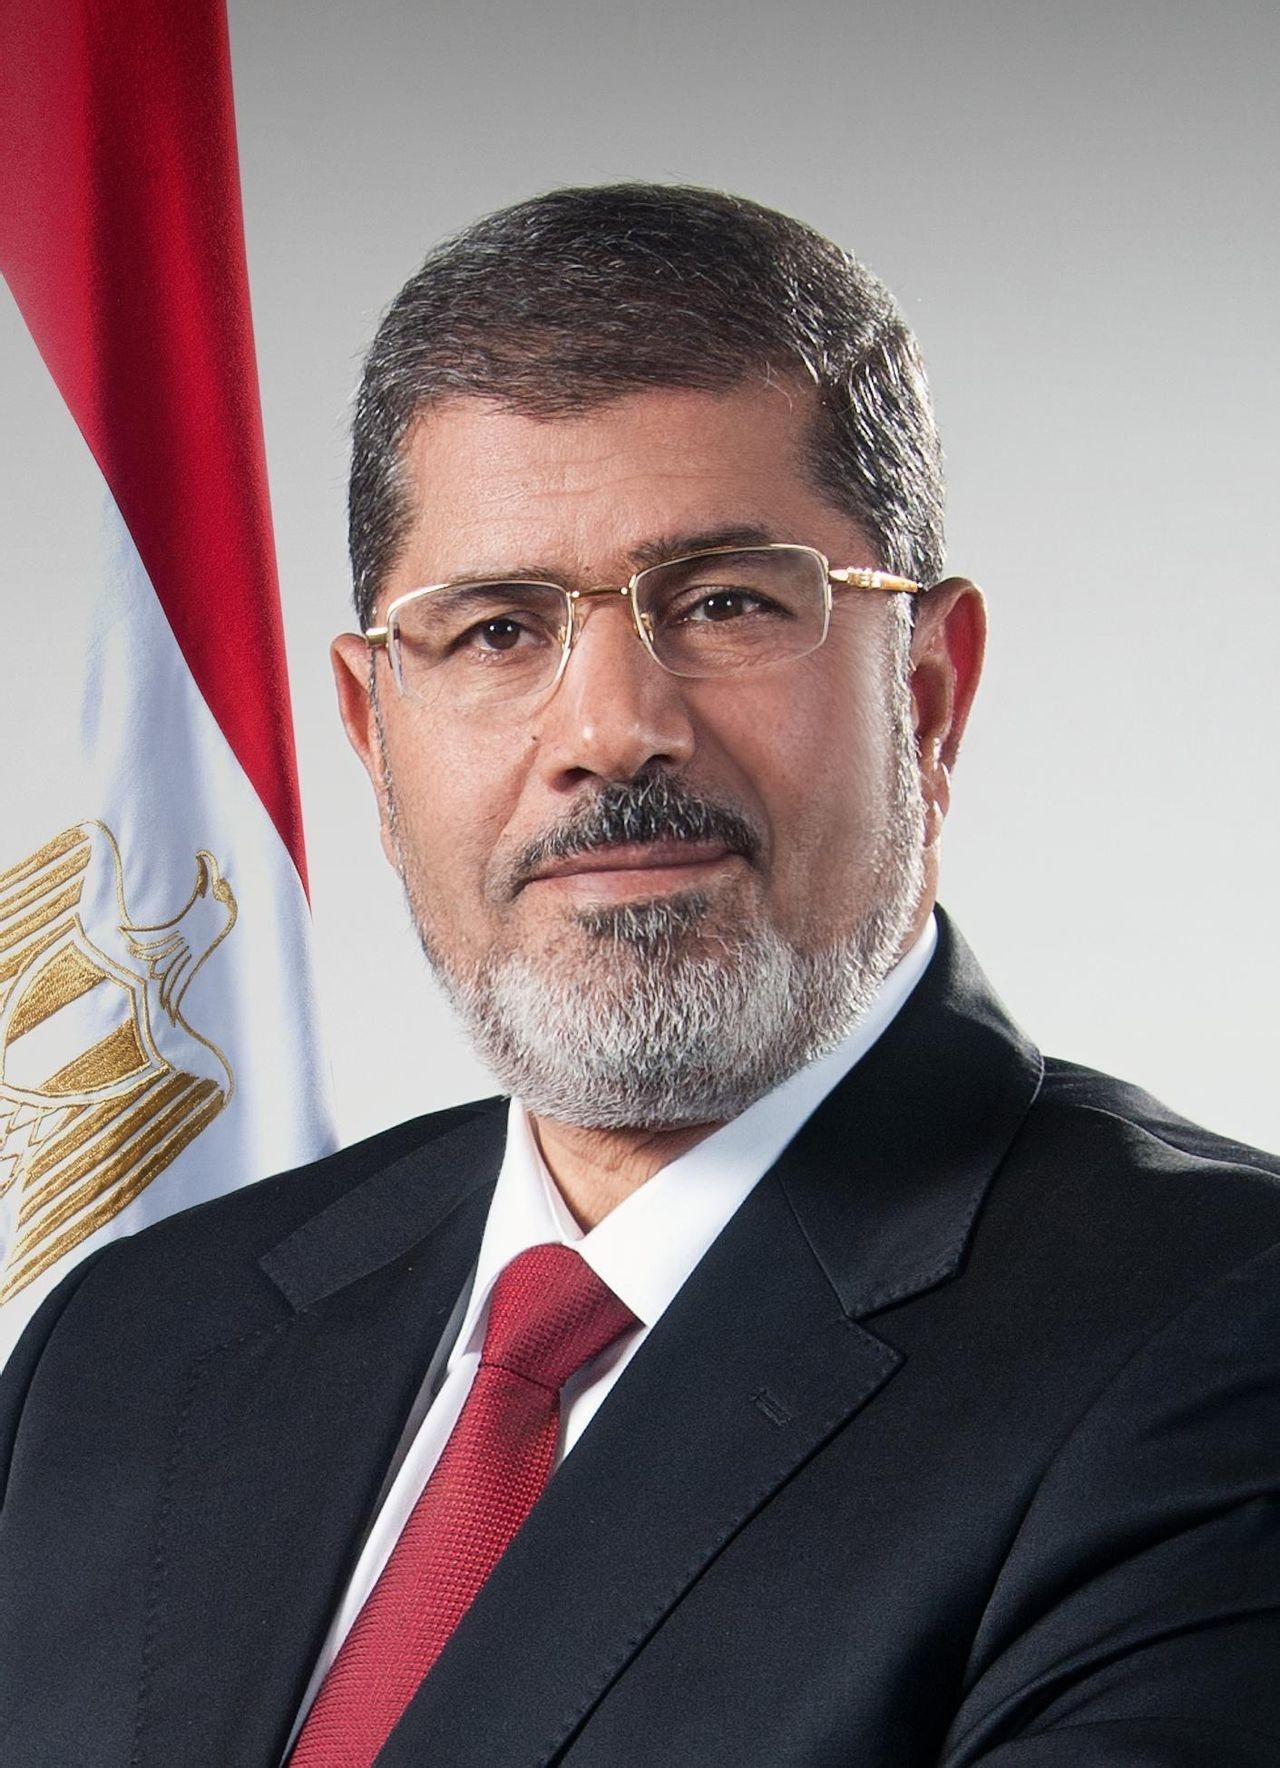 [2] 开罗刑事法庭2016年6月18日宣布,埃及前总统穆尔西因间谍罪以及